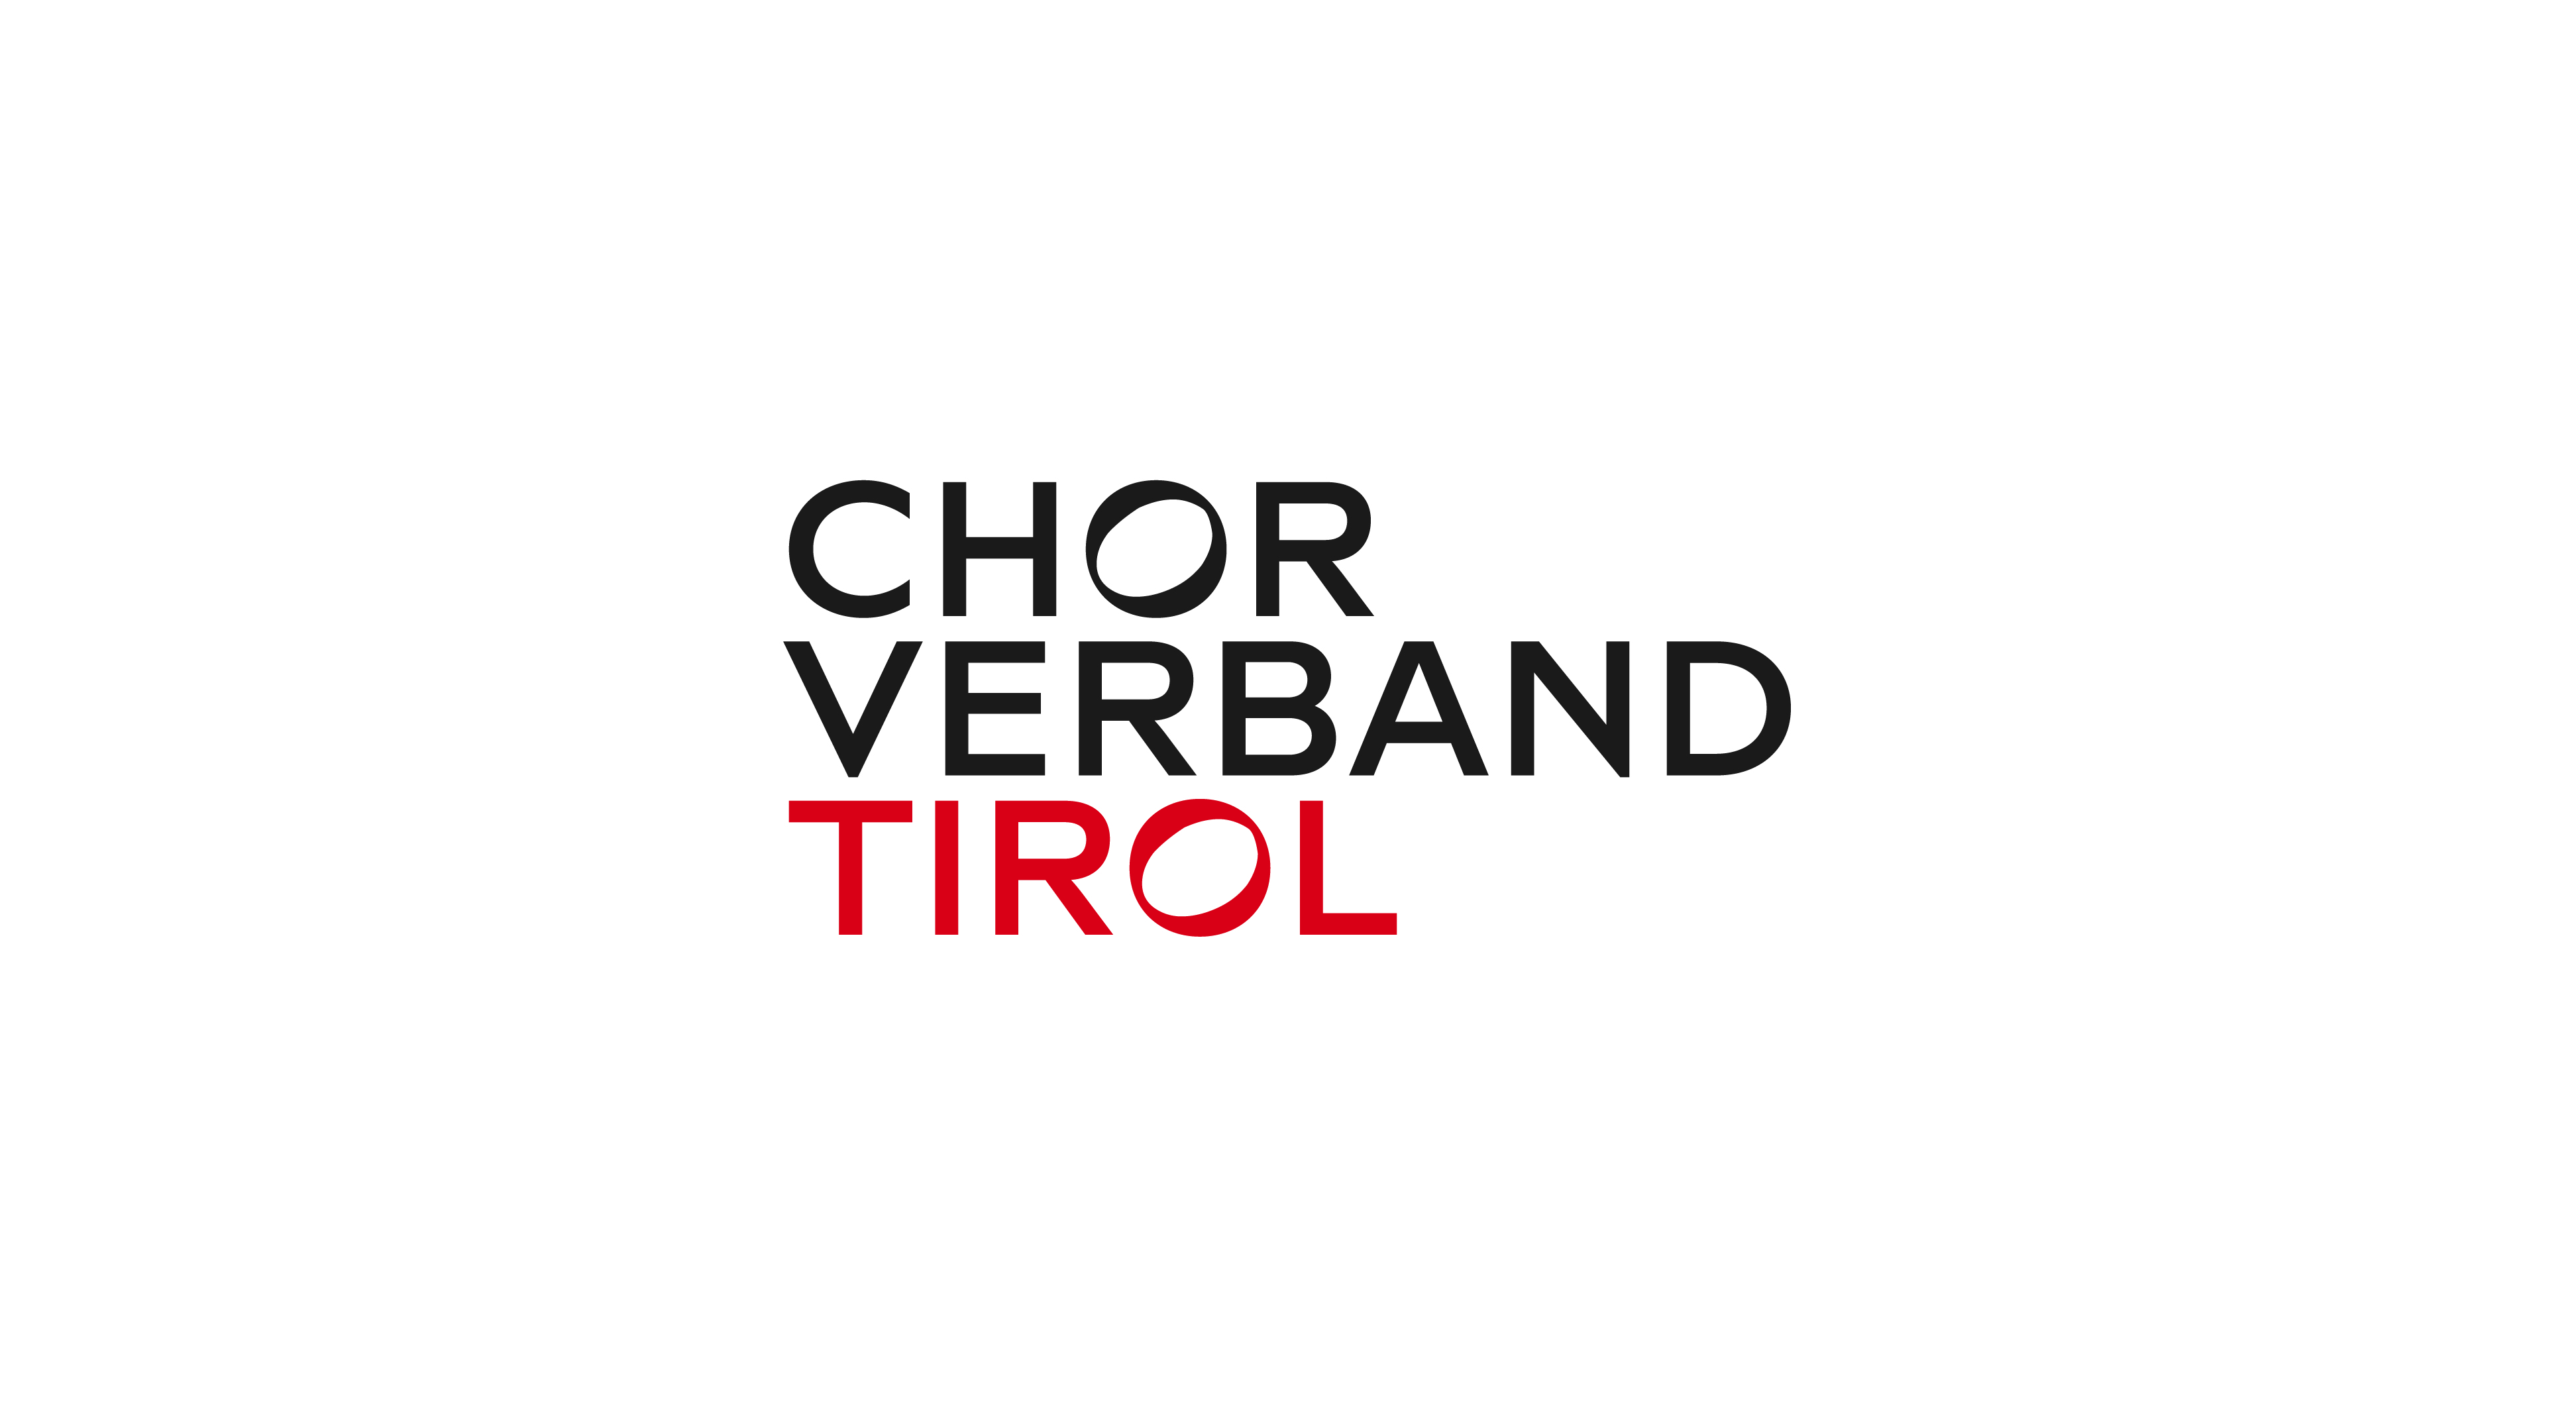 chorverband tirol logo cmyk